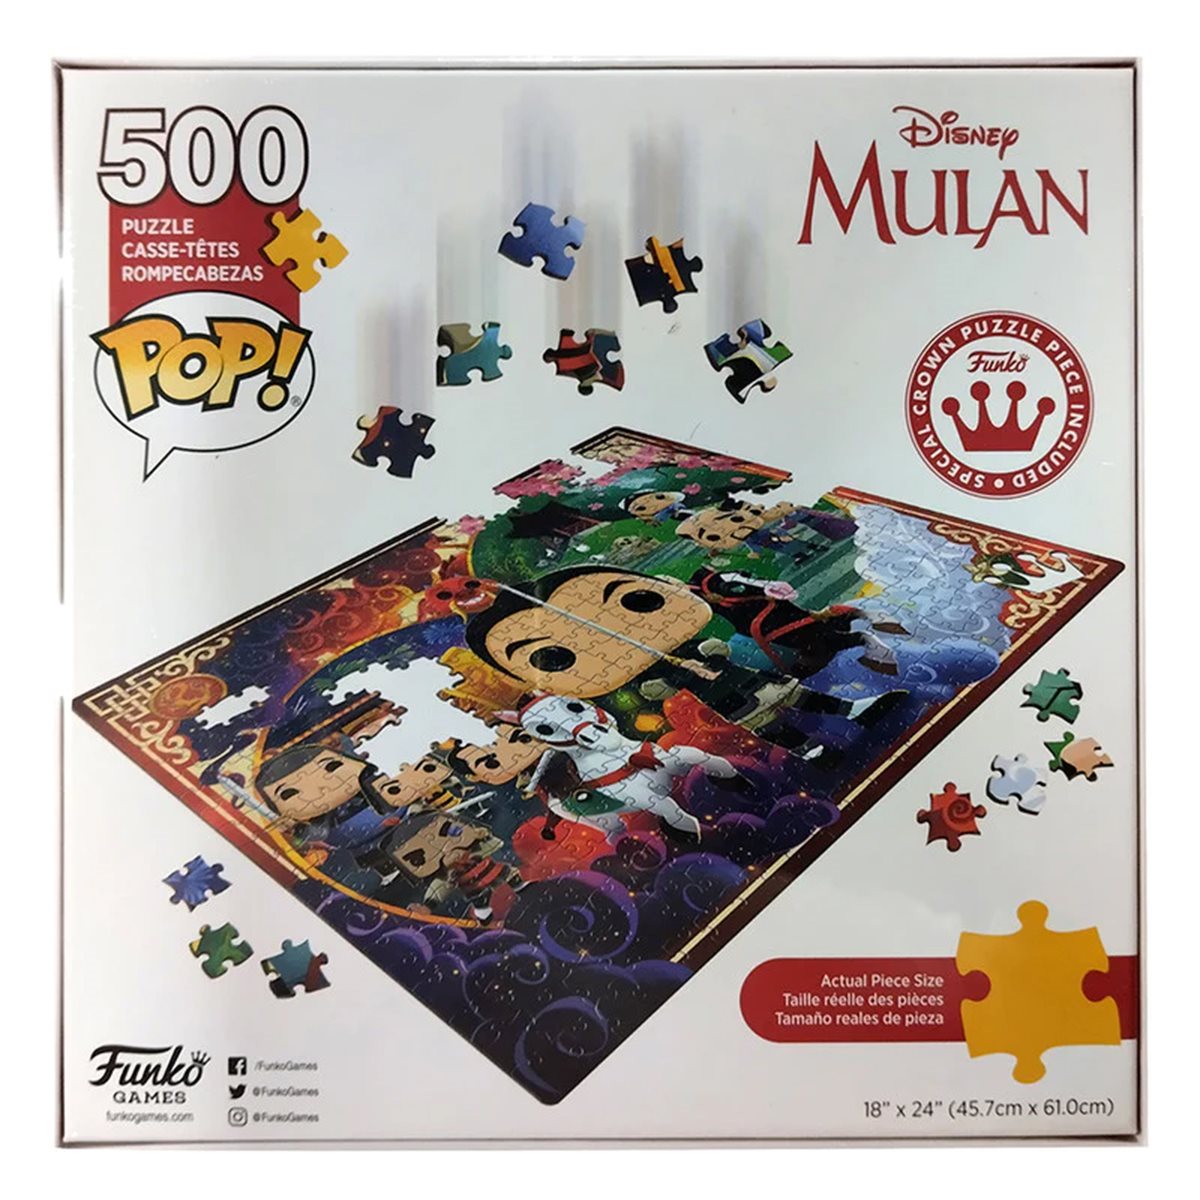 Funko Pop! Puzzle - Disney Mulan